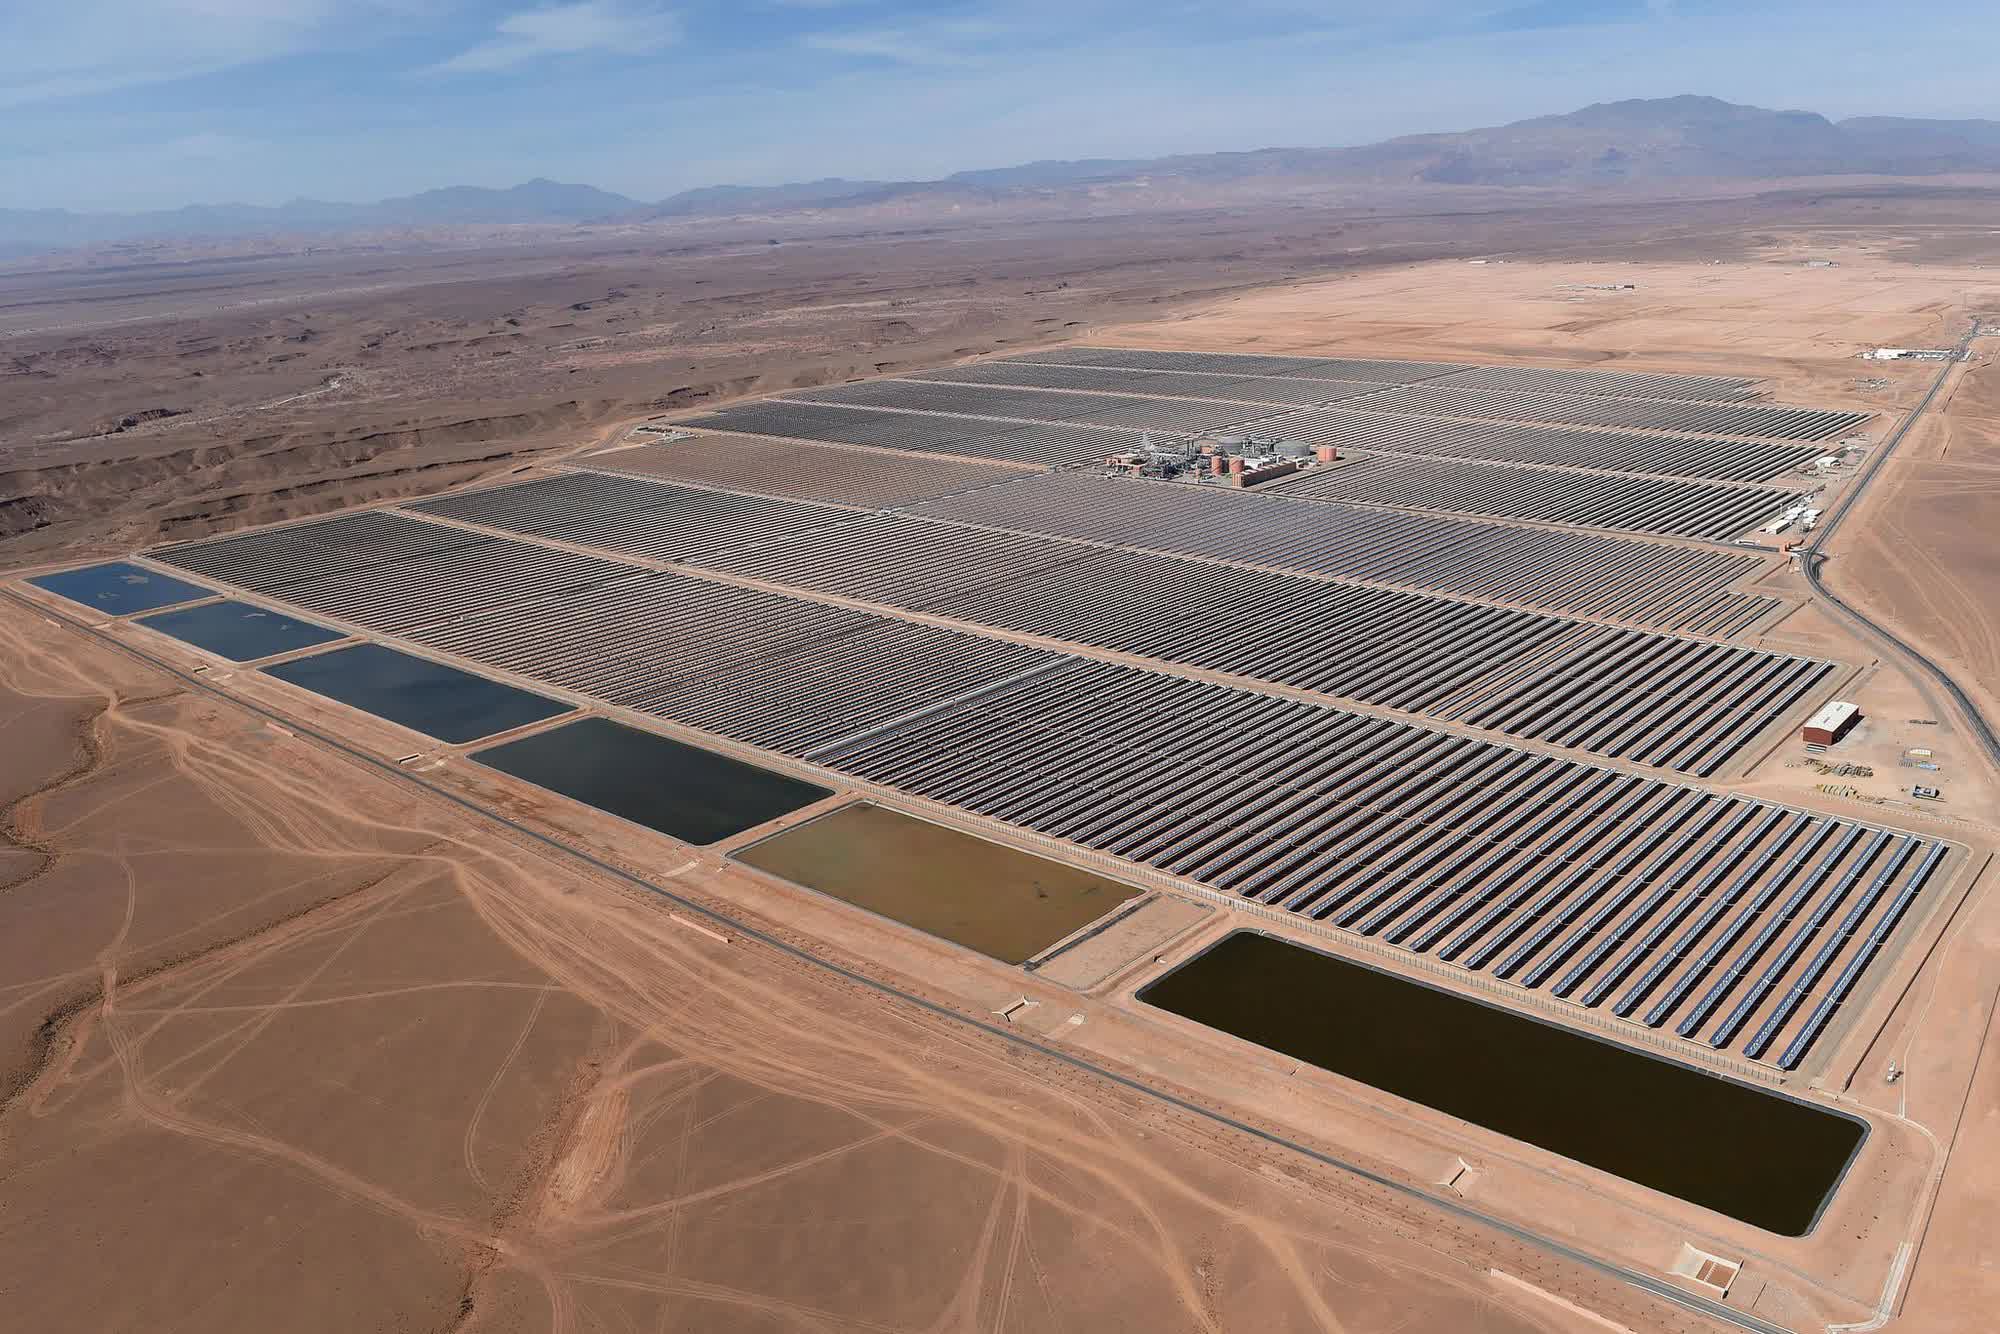 Siêu nhà máy quang điện cùng hồ chứa nước dung tích khủng giữa sa mạc phục vụ World Cup 2022 - Ảnh 1.